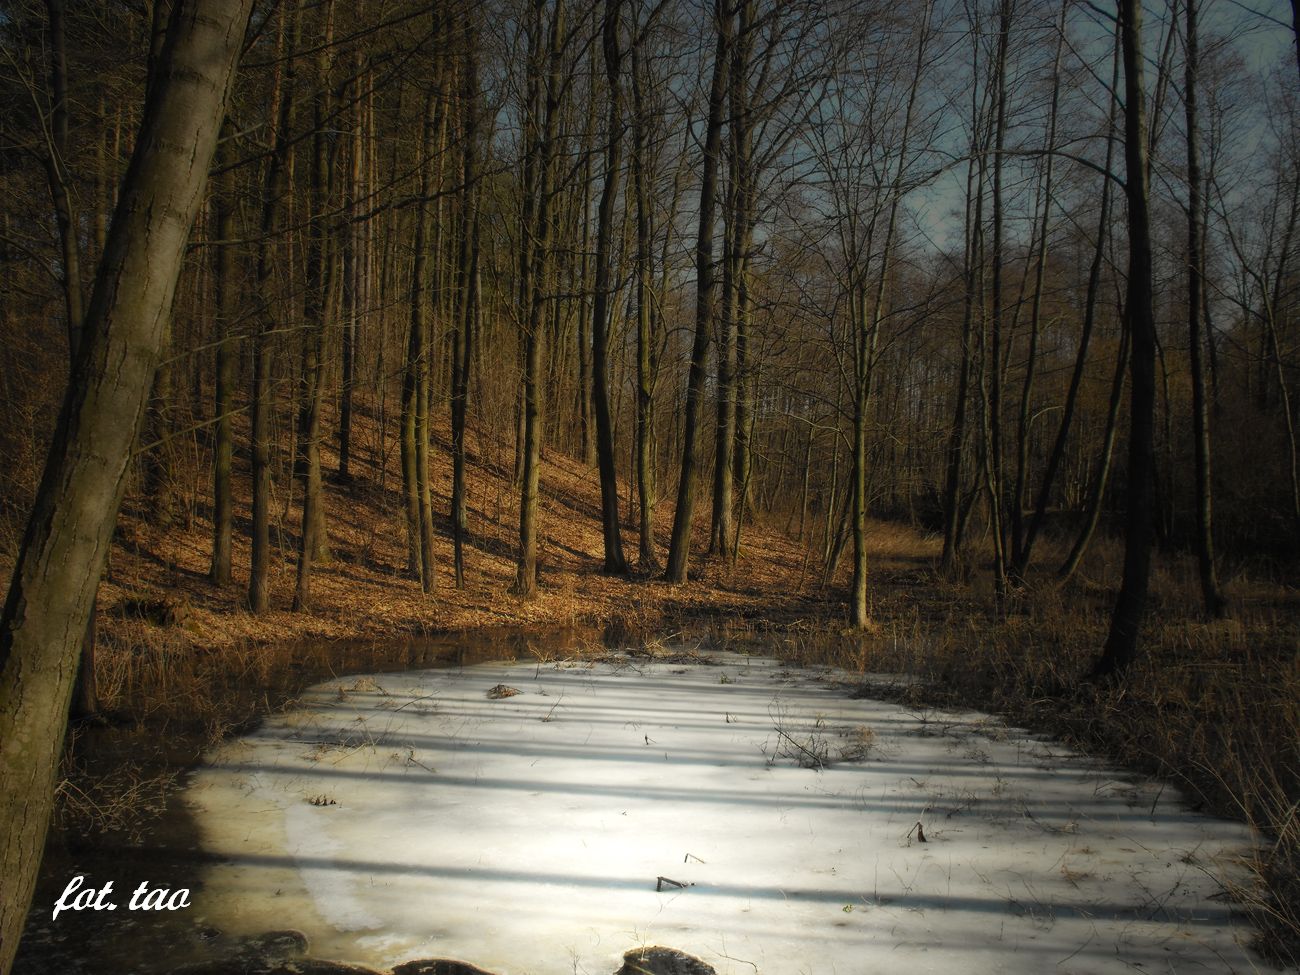 W poszukiwaniu wiosny. Malowniczy las w okolicy Dobaczewa, 26.02.2014 r.